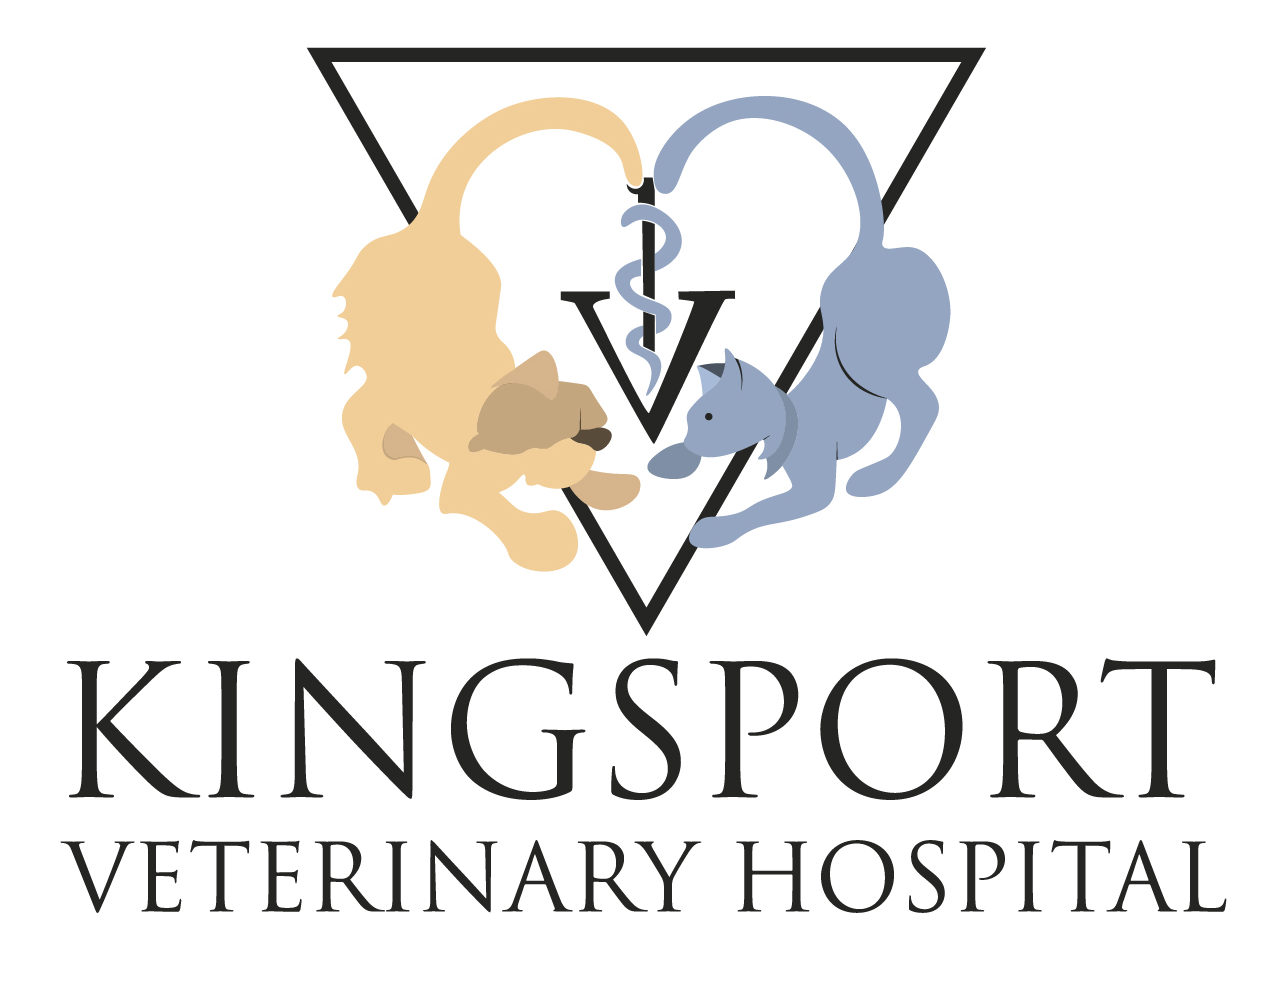 Kingsport Veterinary Hospital logo